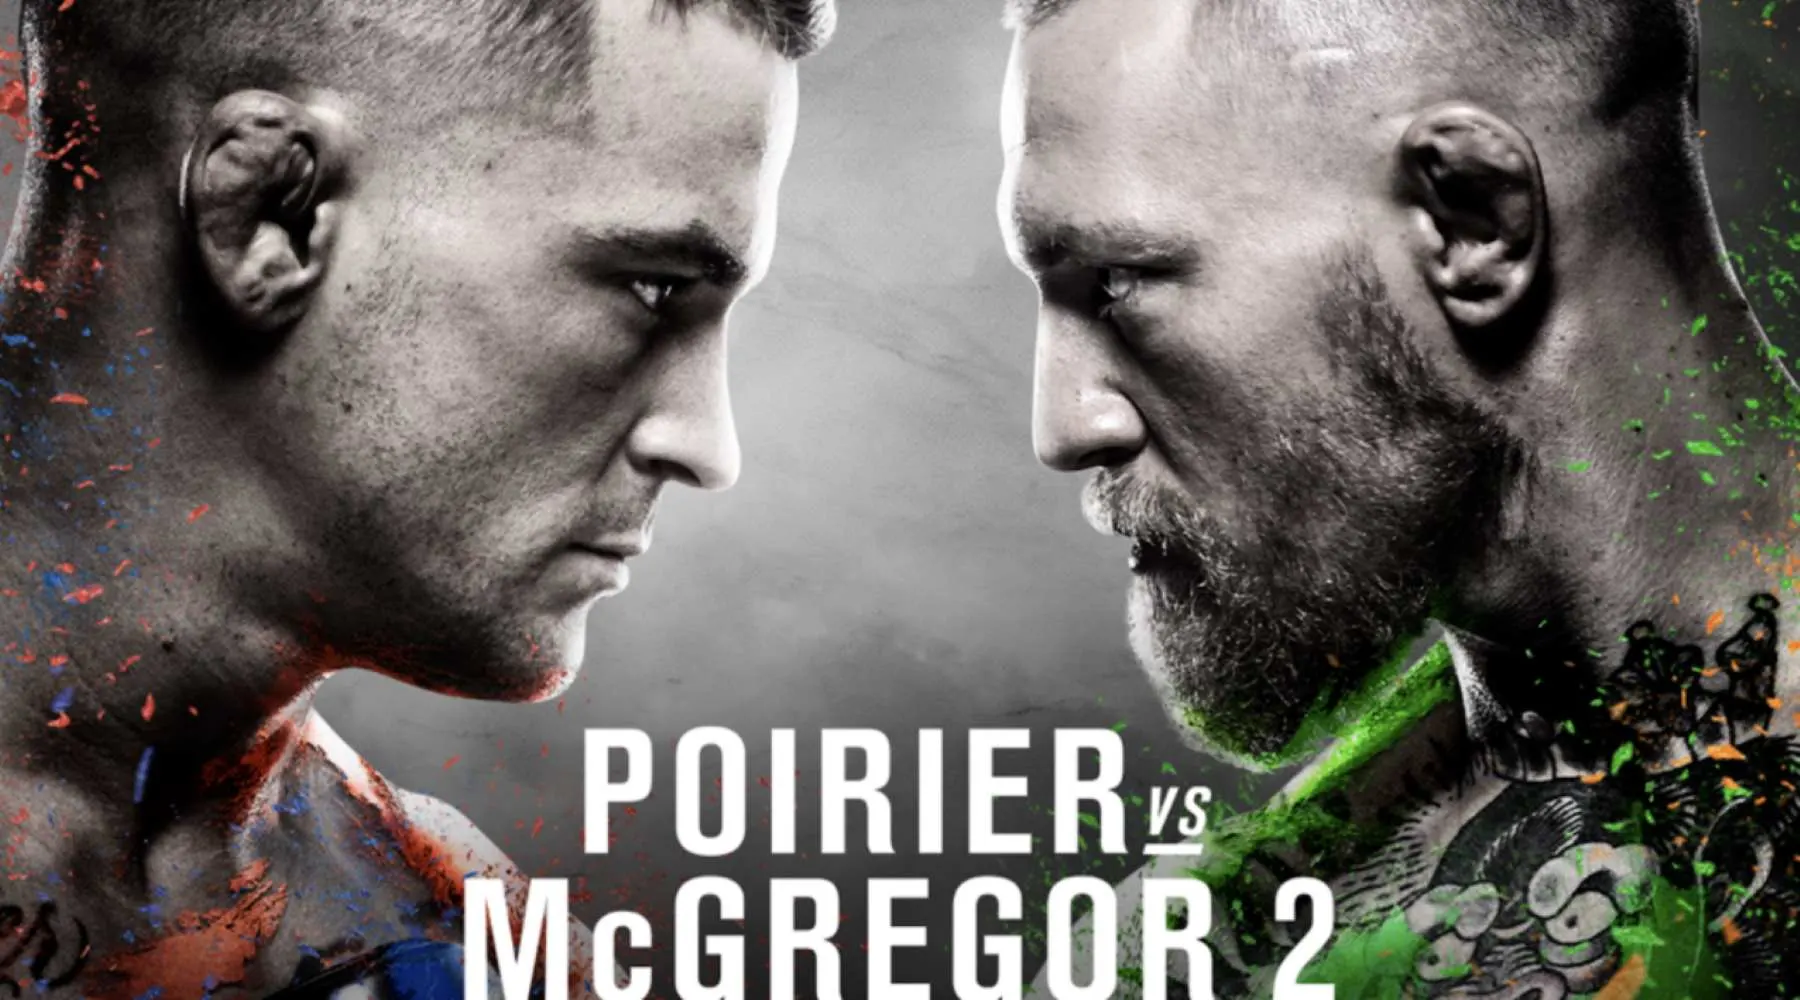 How to watch UFC 257 Poirier vs McGregor live in Australia